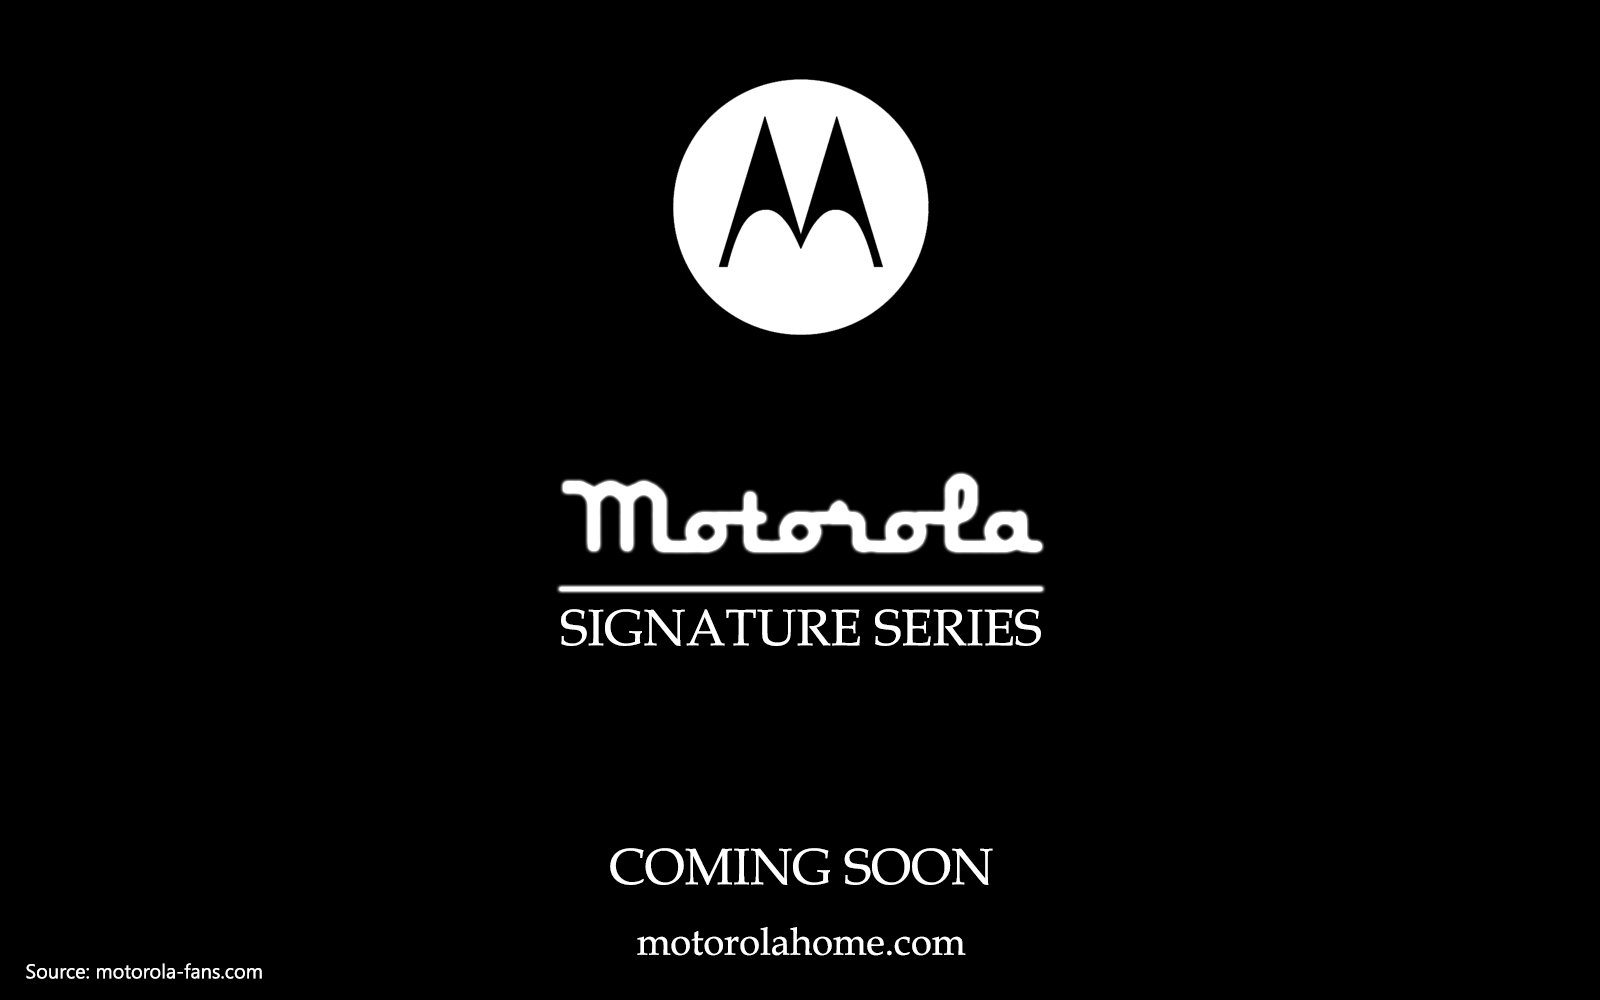 Motorola Signature Series